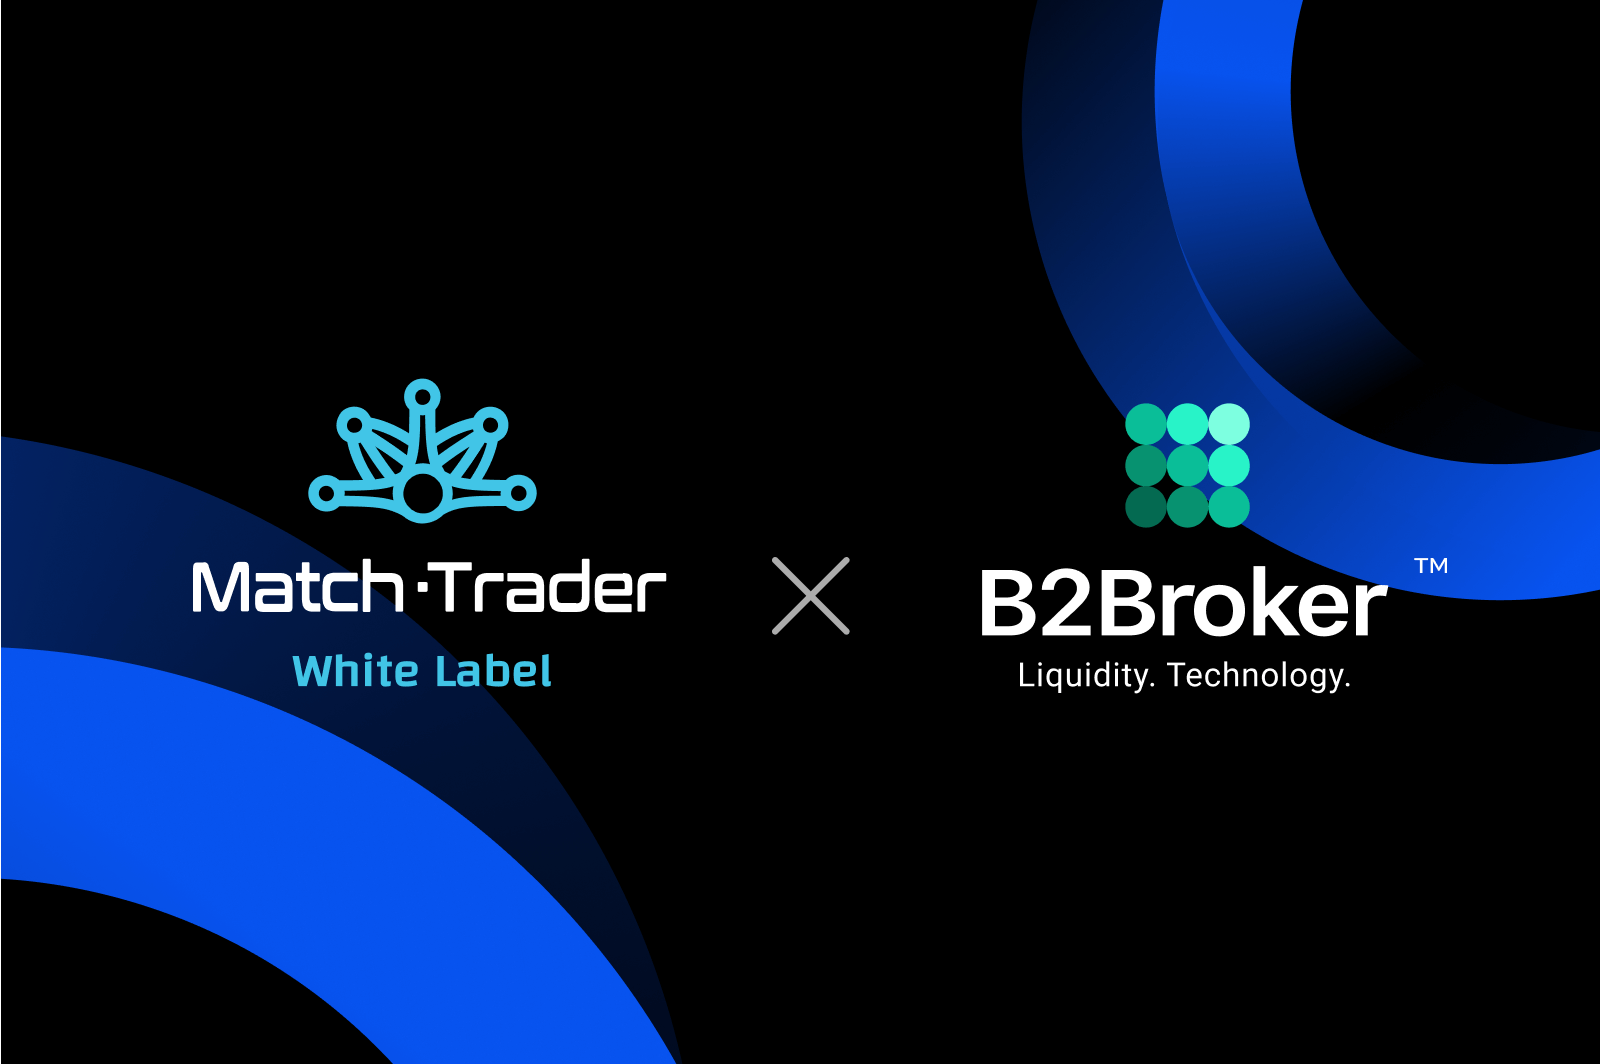 Gói nhãn trắng Match-Trader mới của B2Broker cung cấp giải pháp giao dịch toàn diện cho các doanh nghiệp môi giới